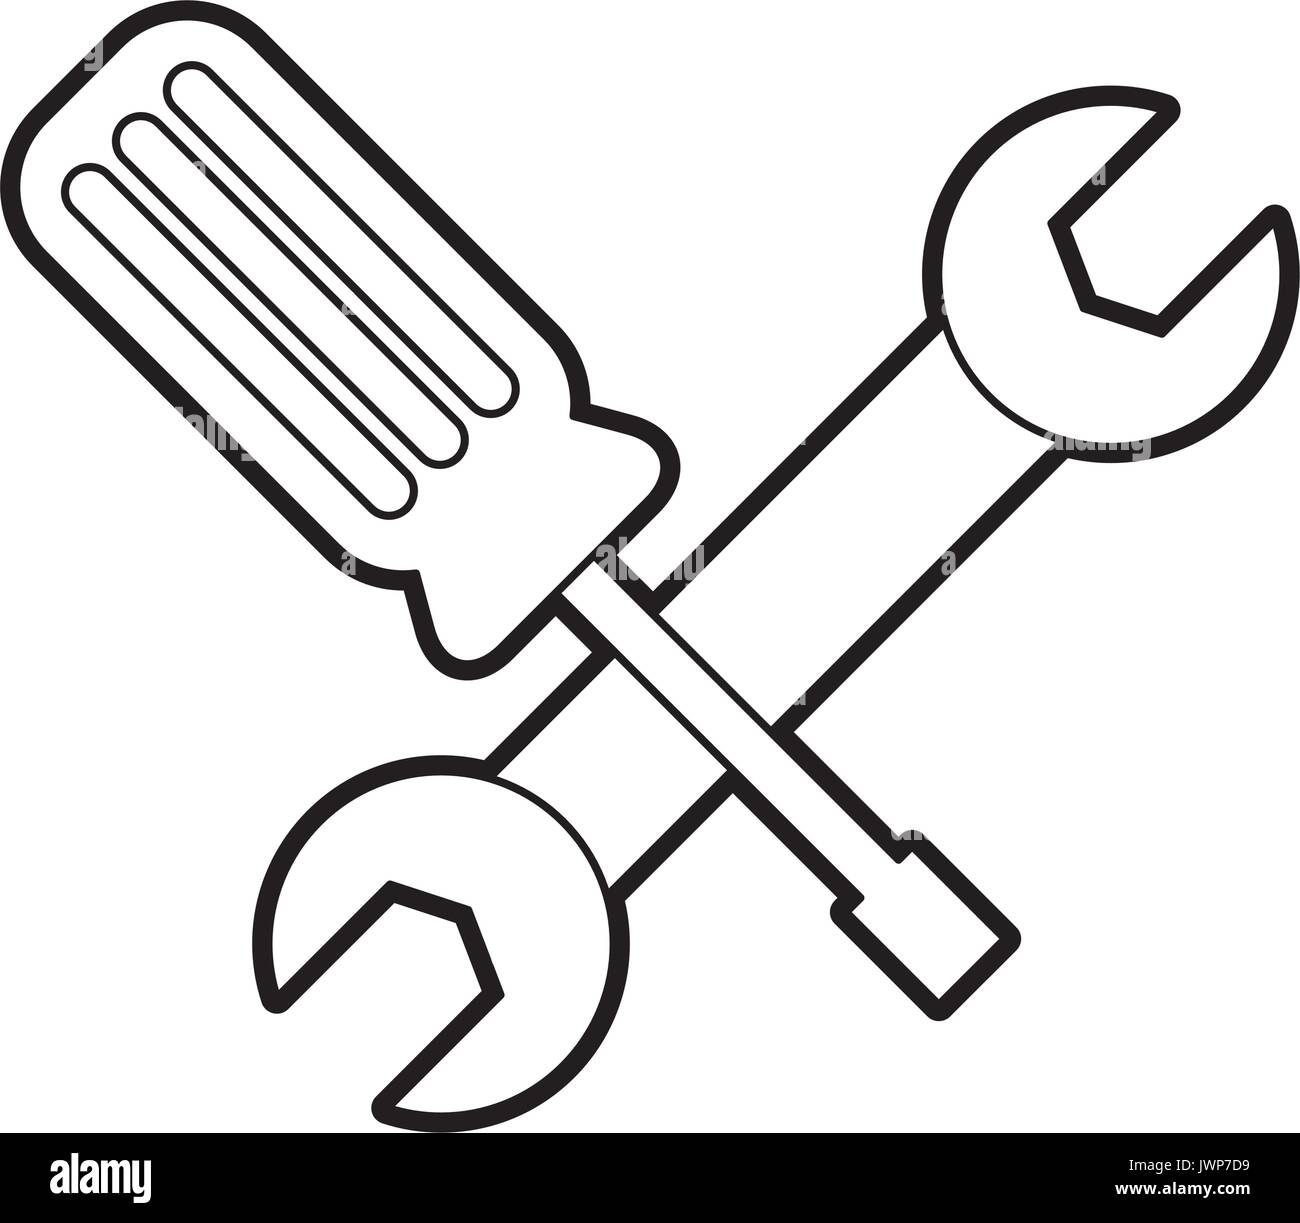 Schraubenschlüssel und Schraubenzieher Symbol Stock-Vektorgrafik - Alamy